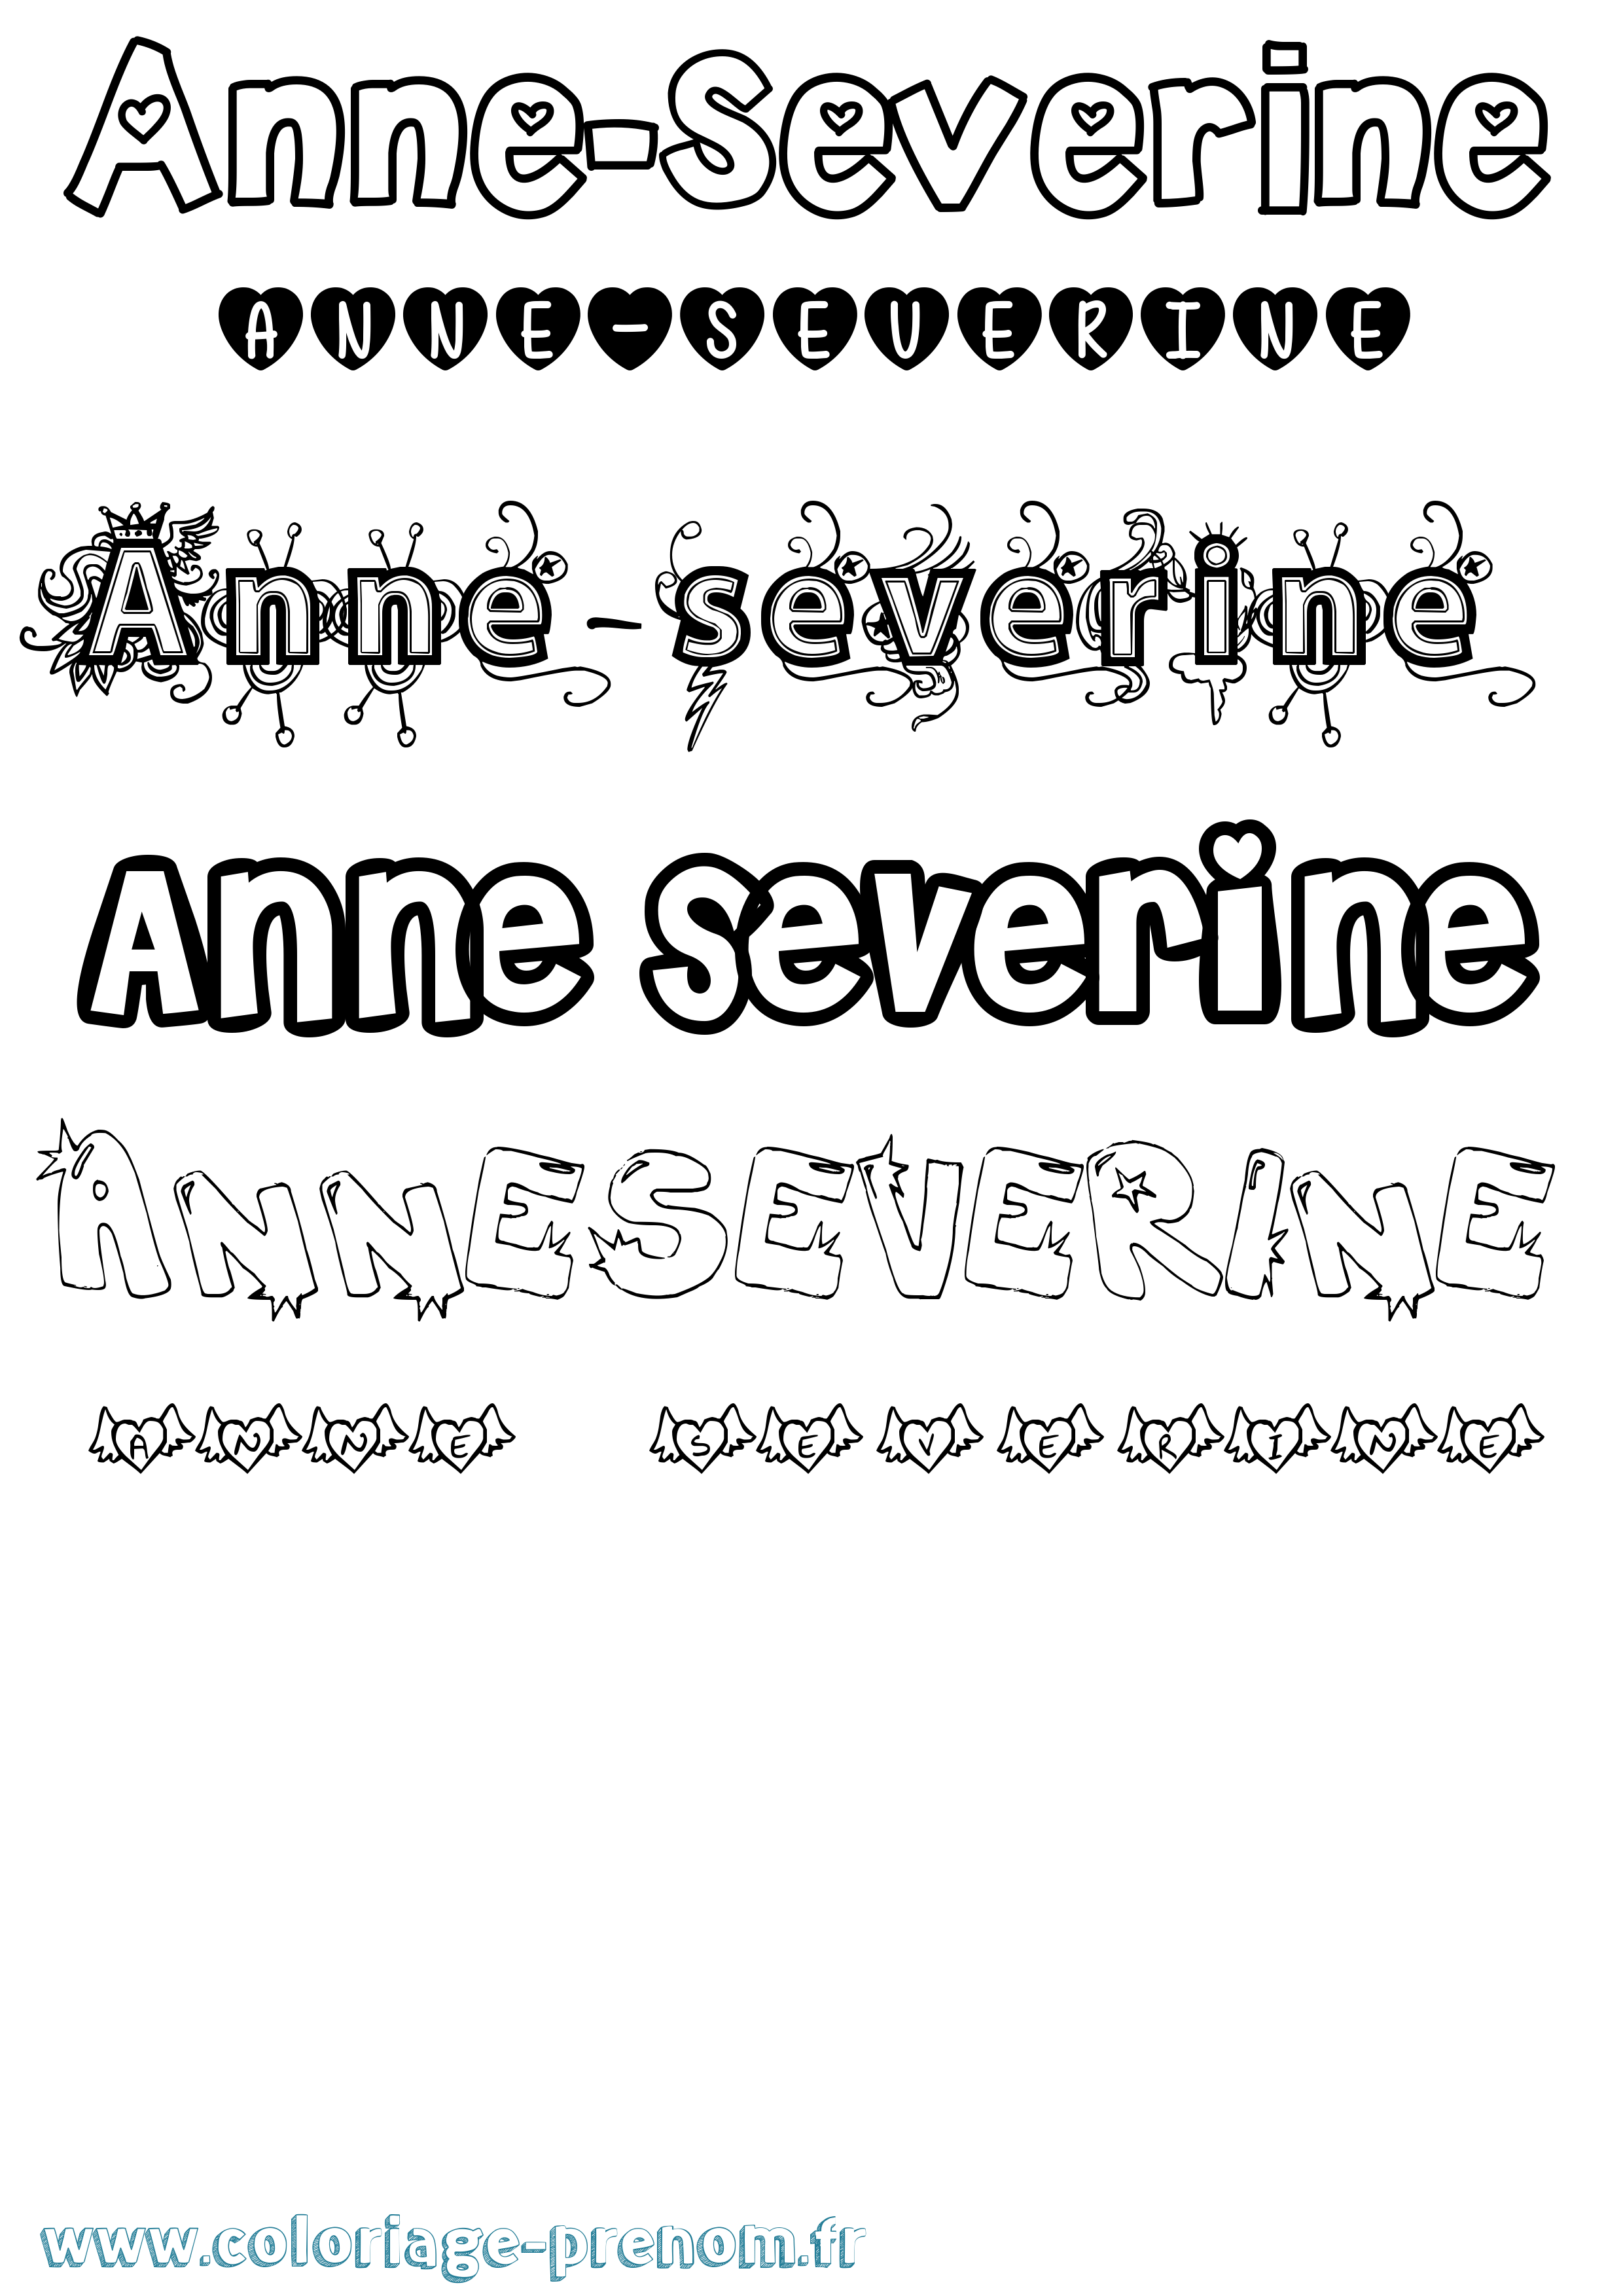 Coloriage prénom Anne-Severine Girly